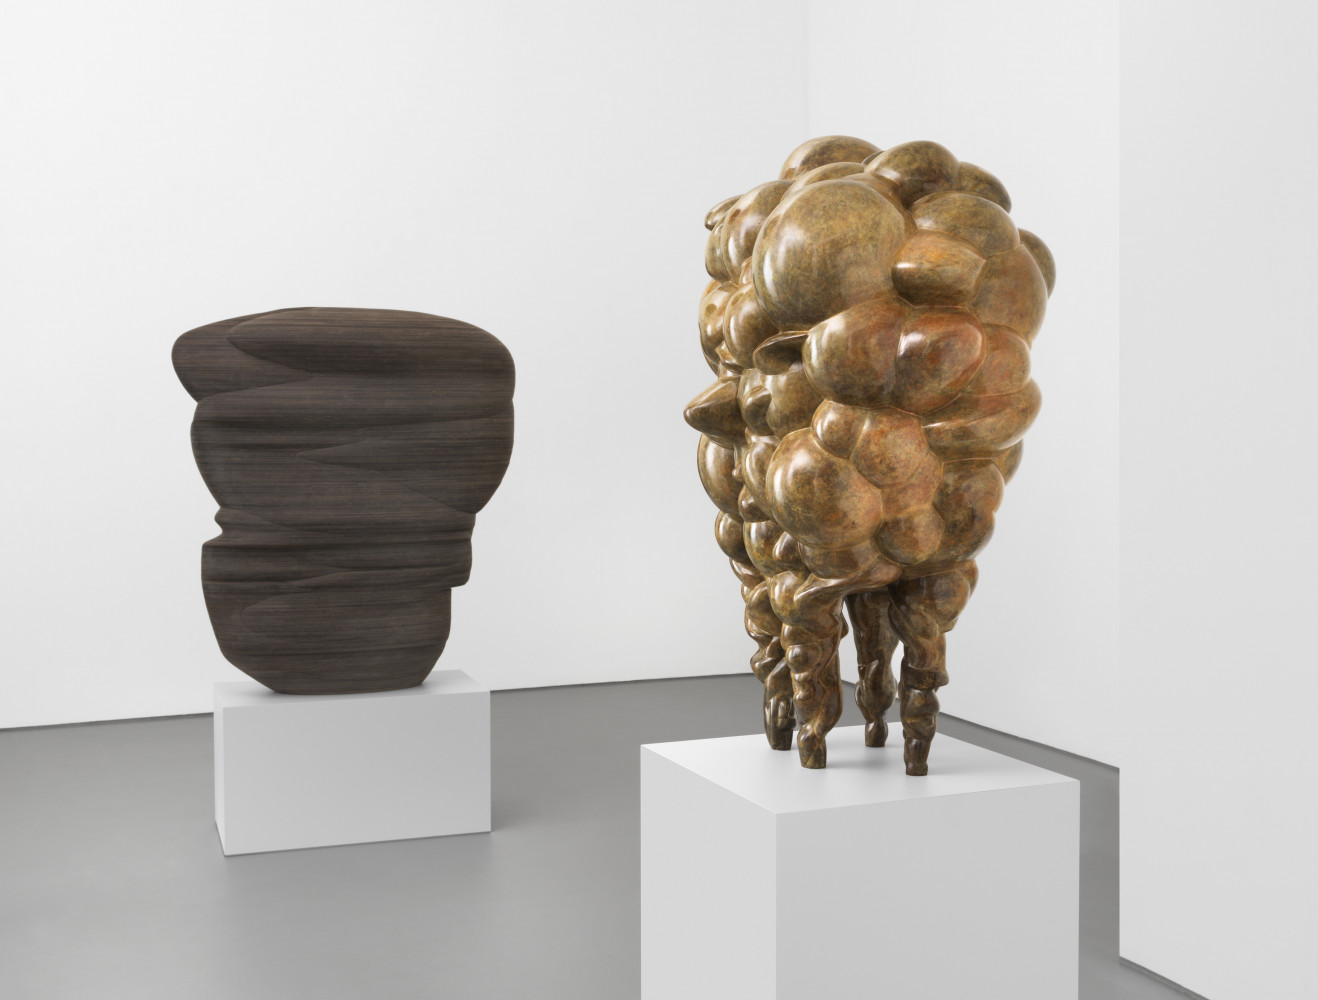 Tony Cragg, ‘Sculptures’, Installation view, Buchmann Galerie, 2021